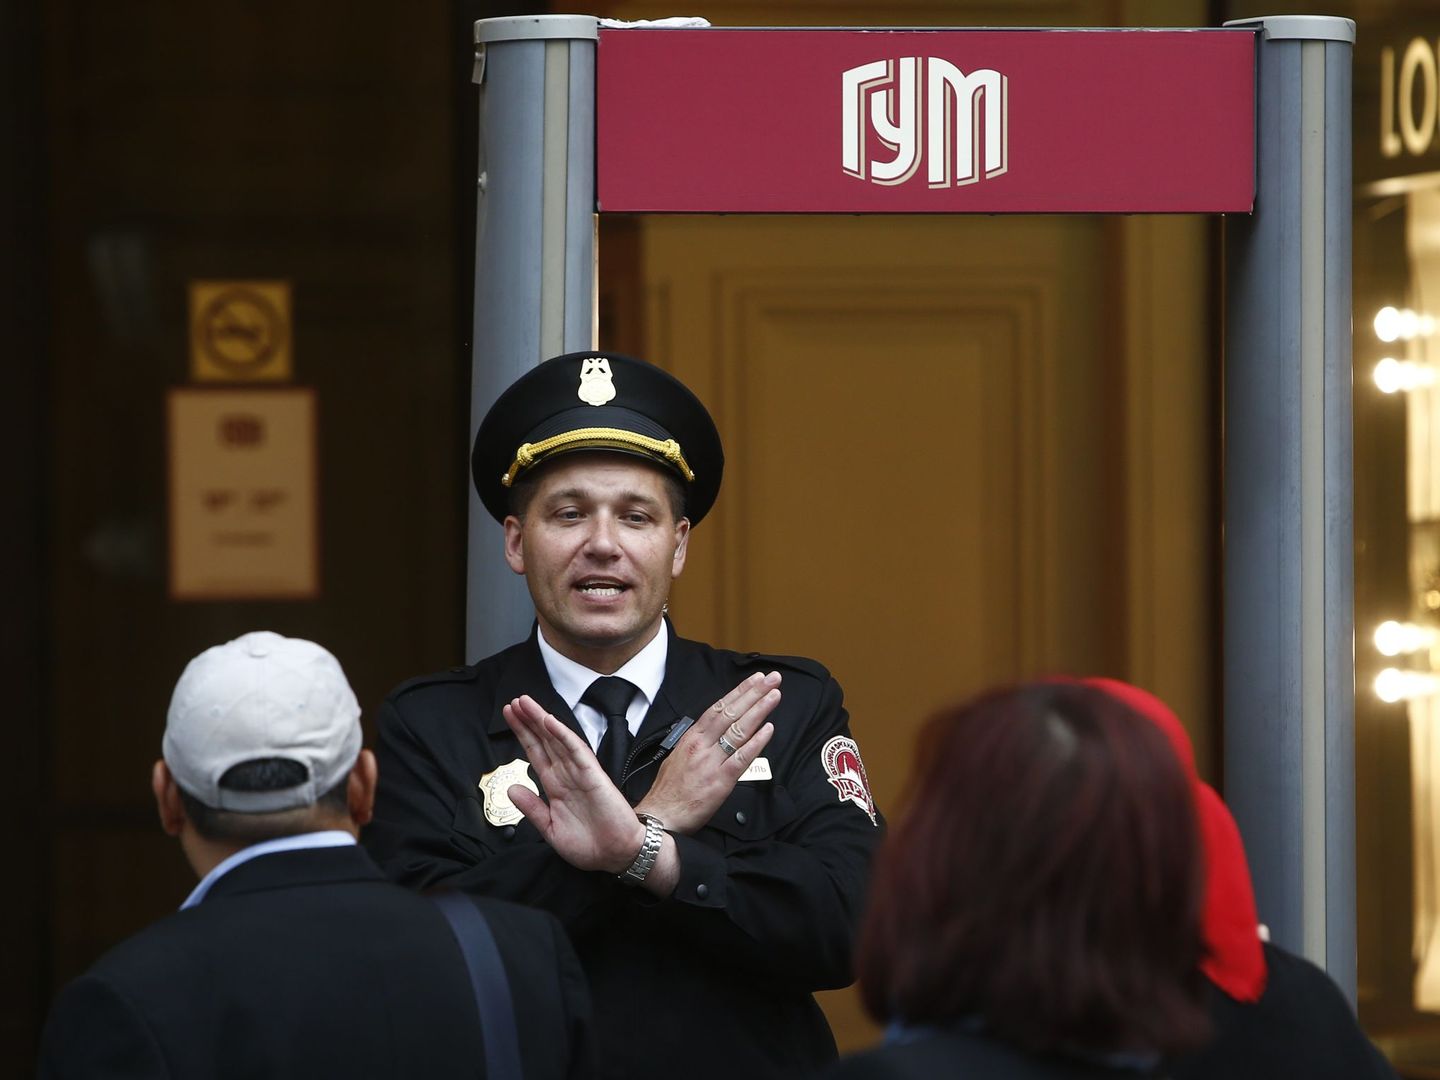 Un guardia de seguridad bloquea la entrada al centro comercial GUM por las amenazas de bomba, hoy en Moscú. (Reuters)